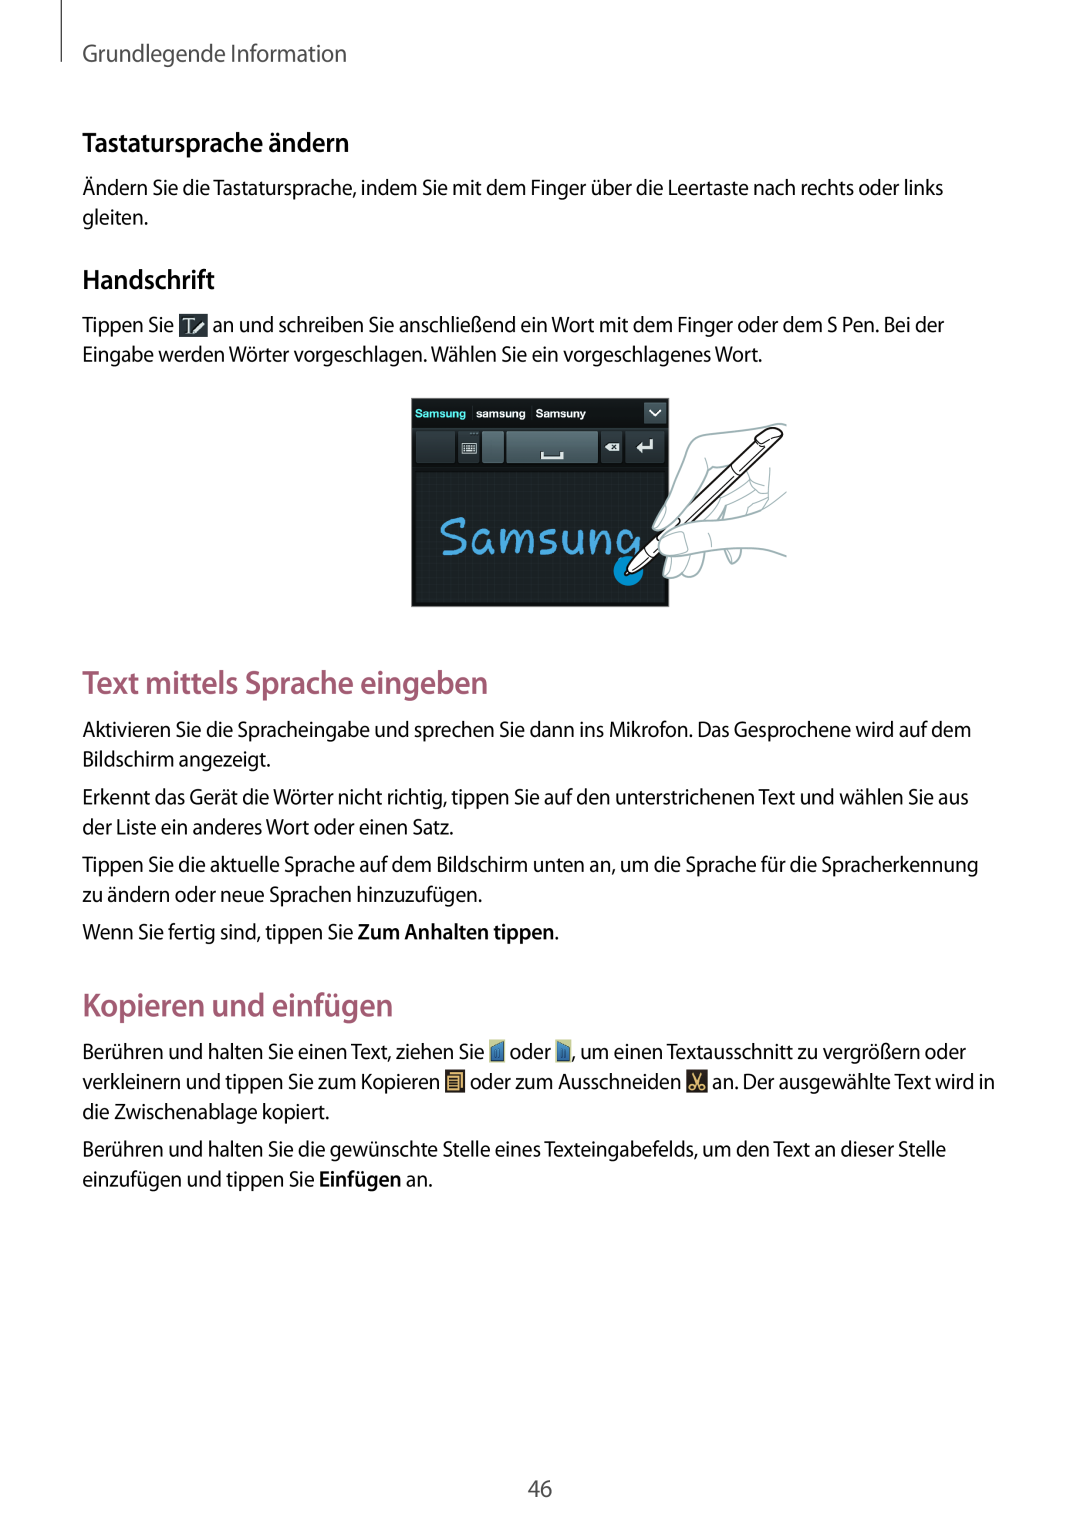 Samsung GT-N7100TADCOS manual Text mittels Sprache eingeben, Kopieren und einfügen, Tastatursprache ändern, Handschrift 